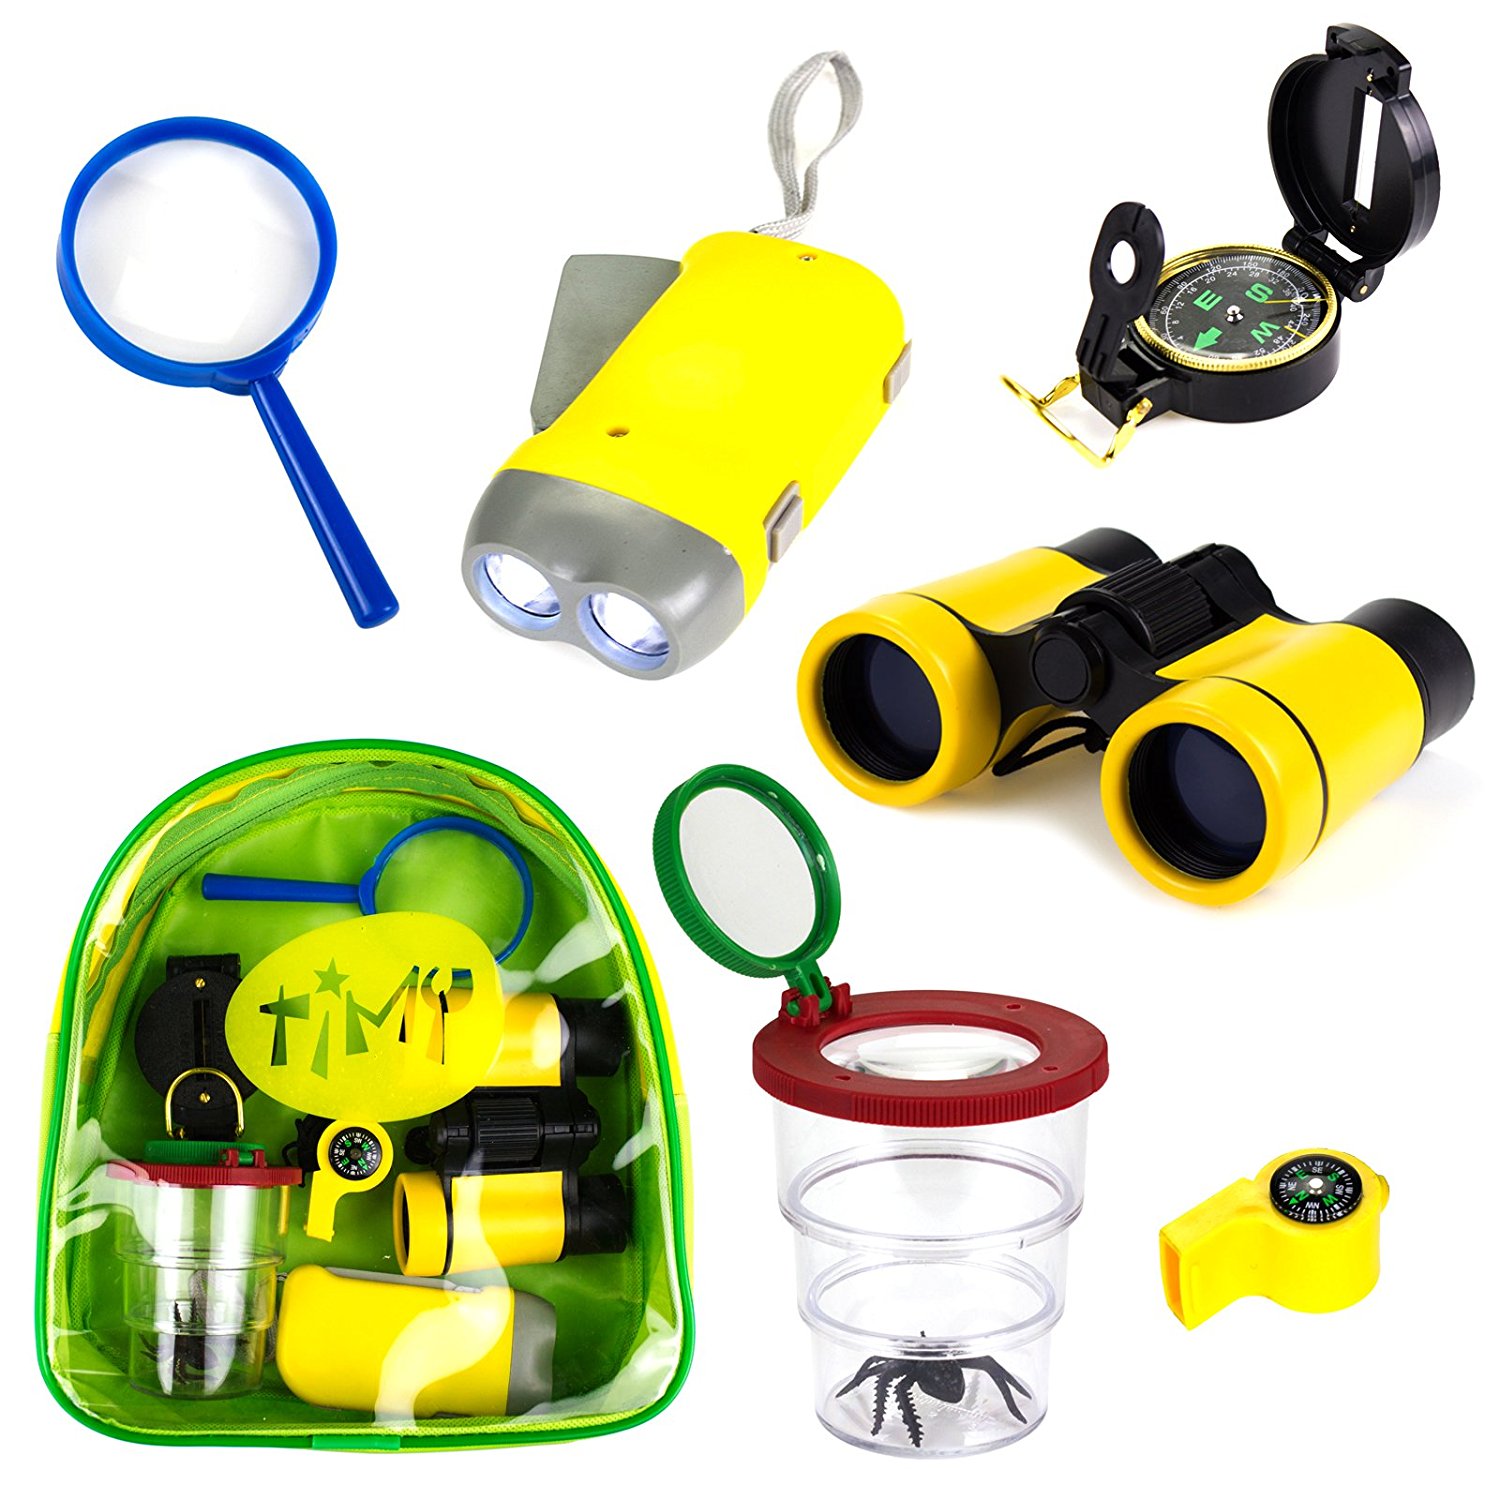 6PCS Kinder Ferngläser Handkurbel Taschenlampe Lupe Whistle und Kordelzug Rucksack Spielzeug Kit für Camping Wandern Mini Kompass VGEBY1 Fernglas Set für Kinder